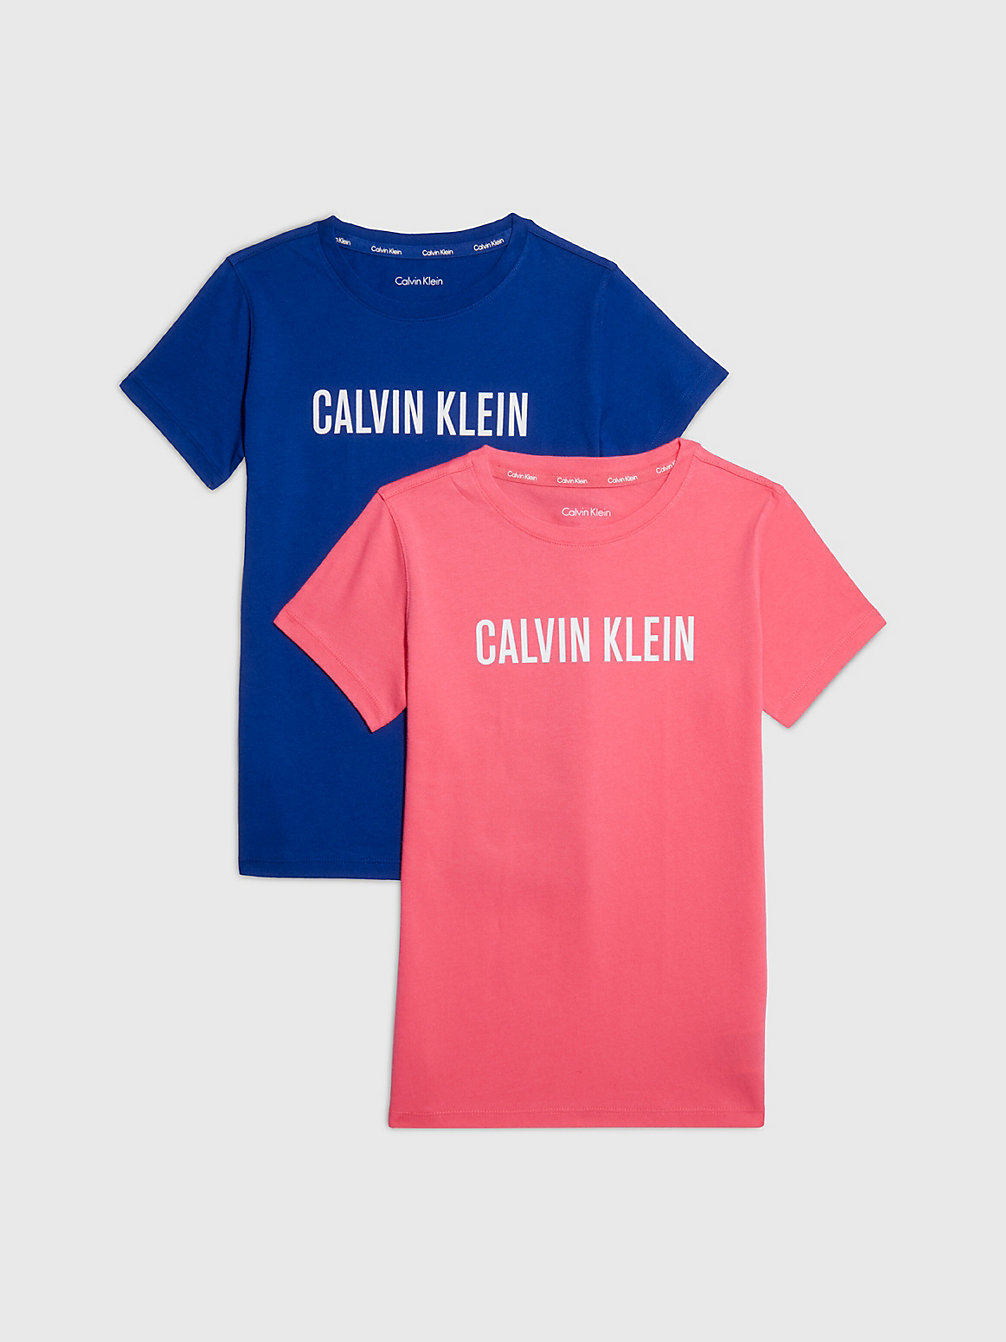 Lot De 2 T-Shirts - Intense Power > PINKFLASH/BOLDBLUE > undefined girls > Calvin Klein